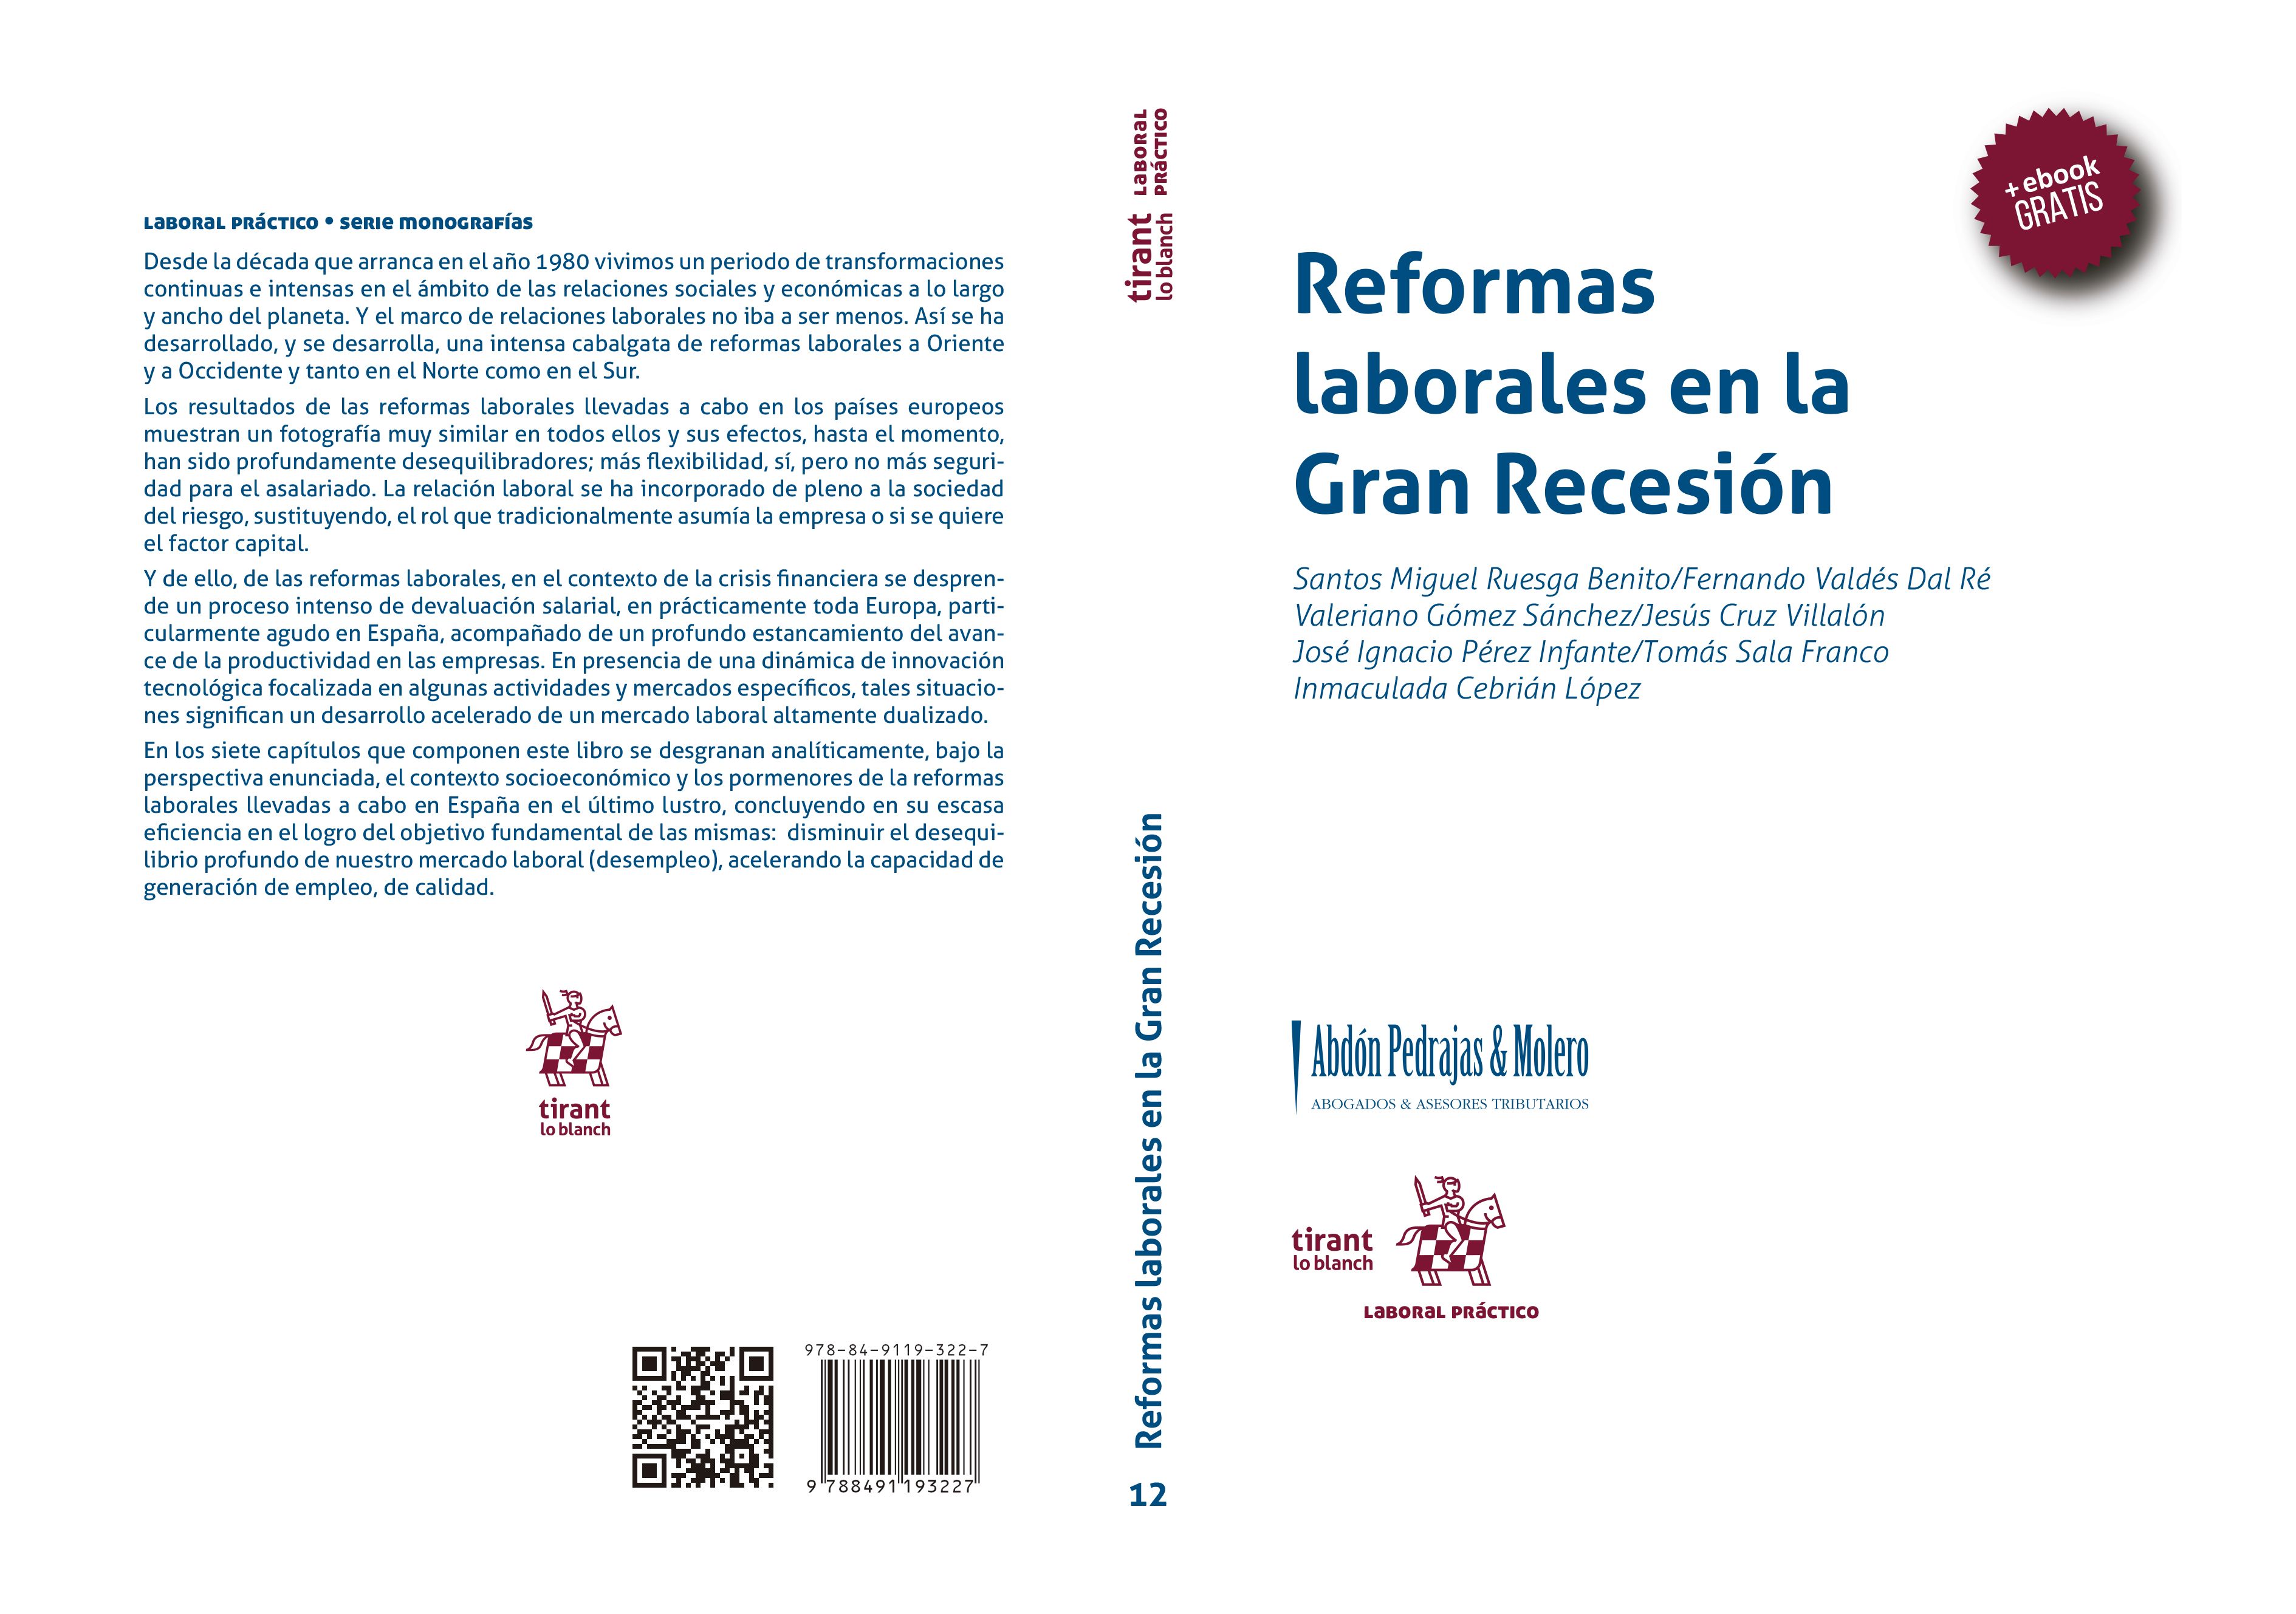 Nueva Monografía "Colección Laboral Práctico" - Reformas Laborales en la Gran Recesión